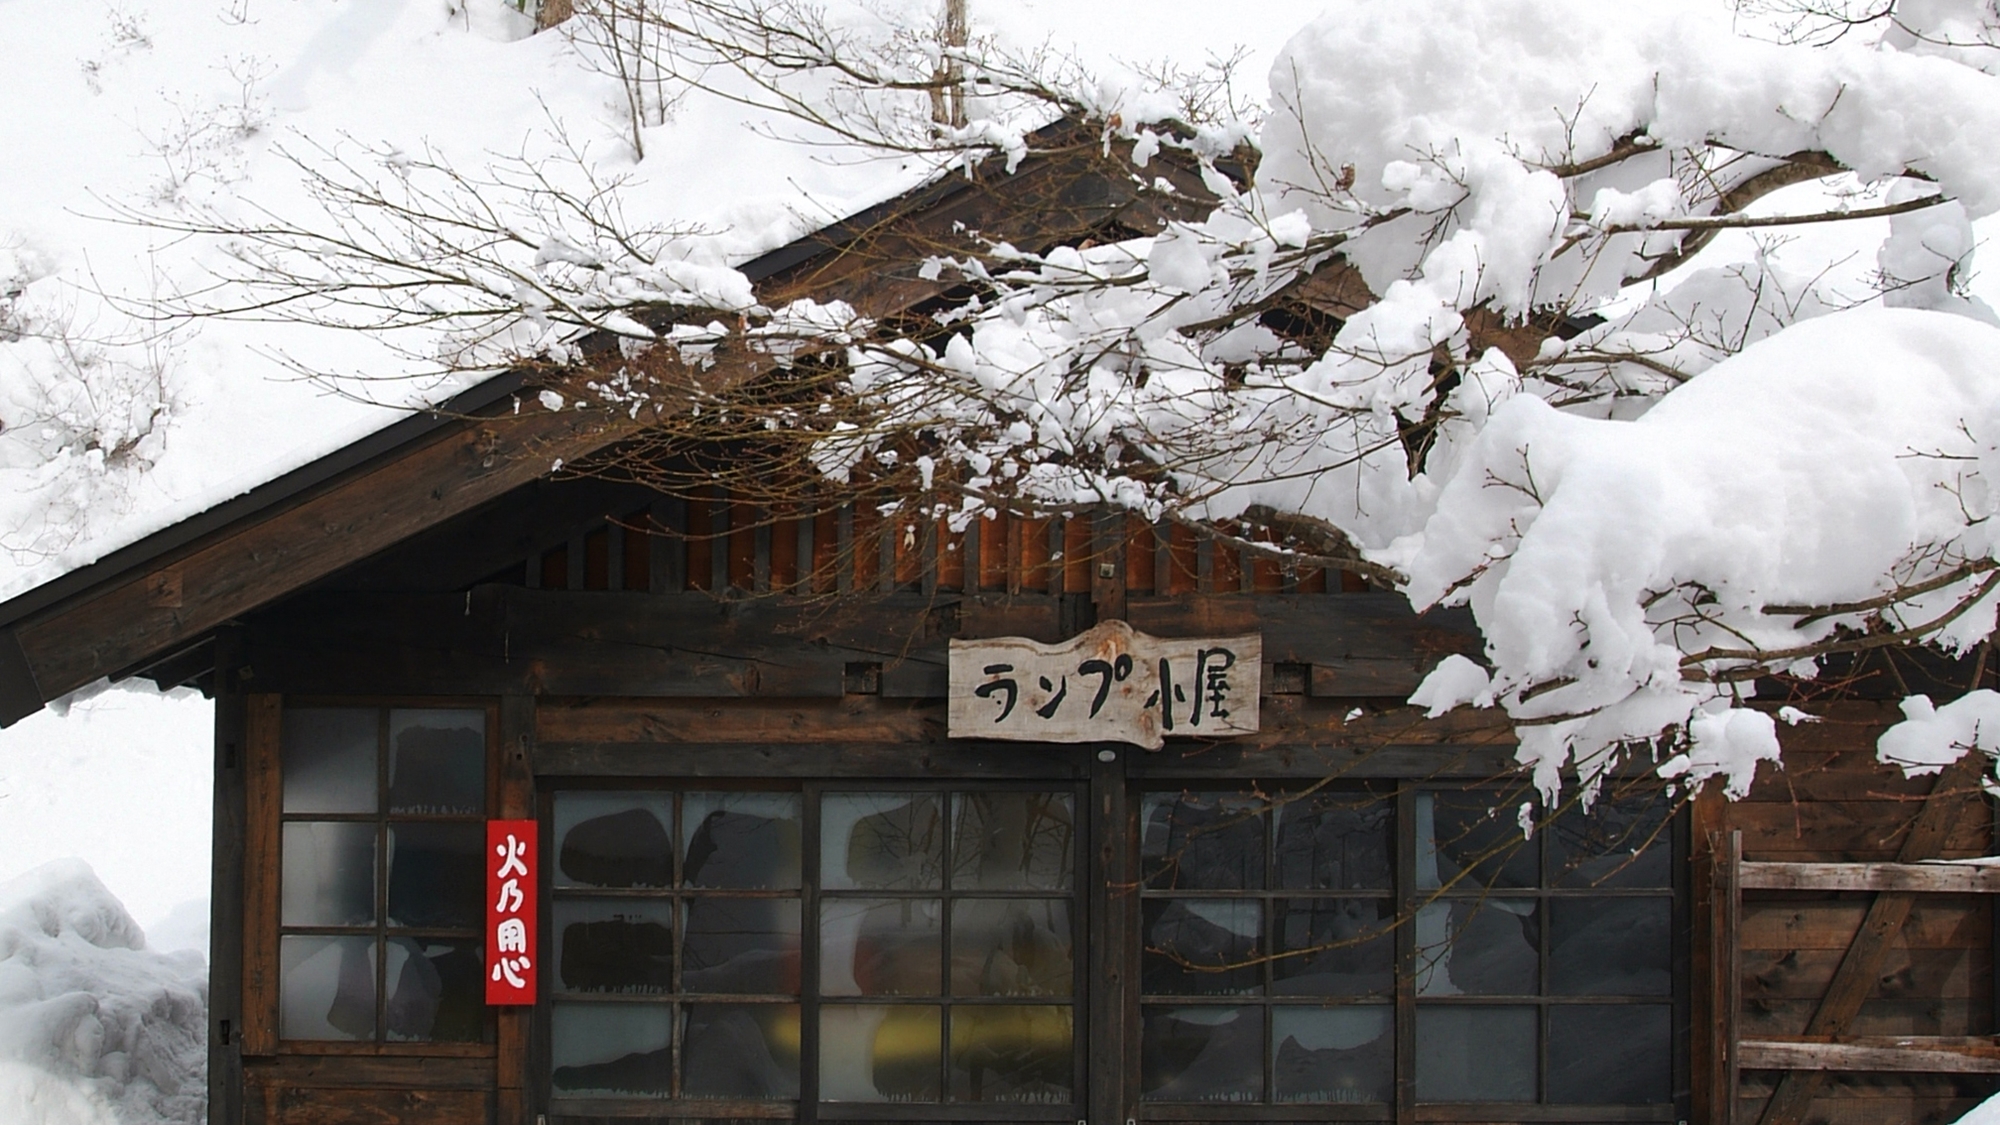 *【ランプ小屋】ランプ小屋も雪に覆われております。